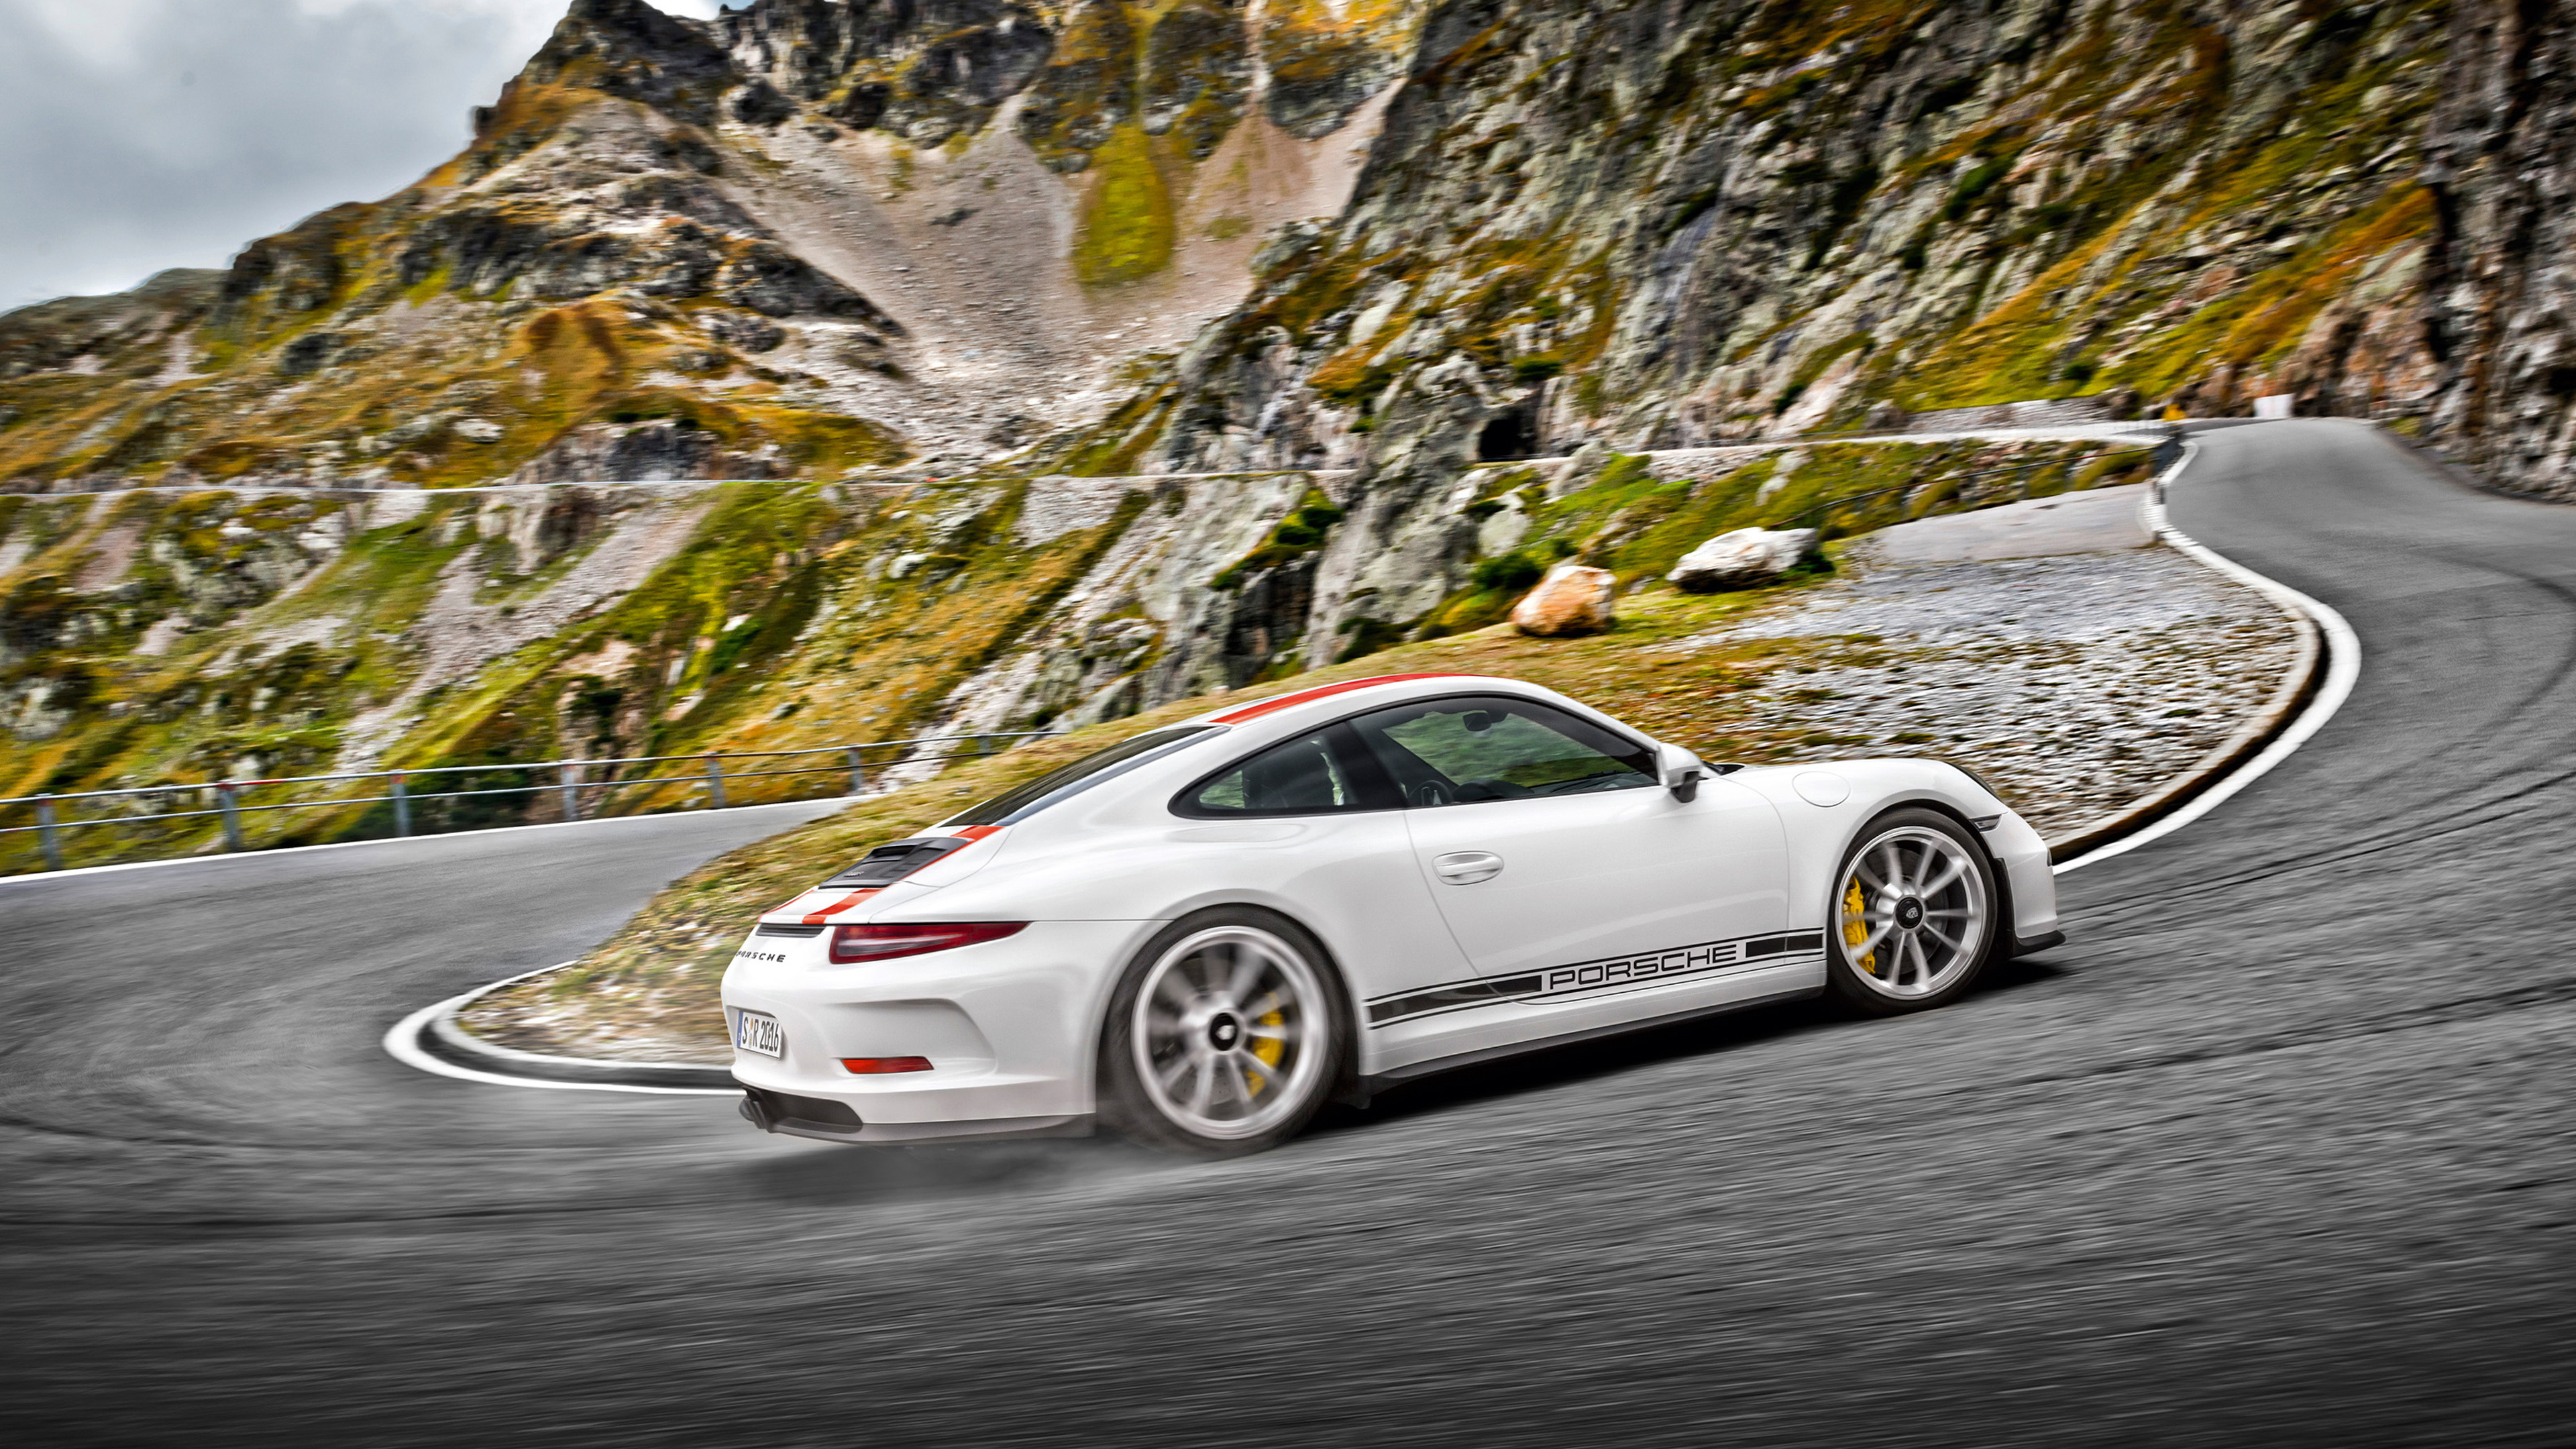 White Porsche 911 on Road. Wallpaper in 3840x2160 Resolution